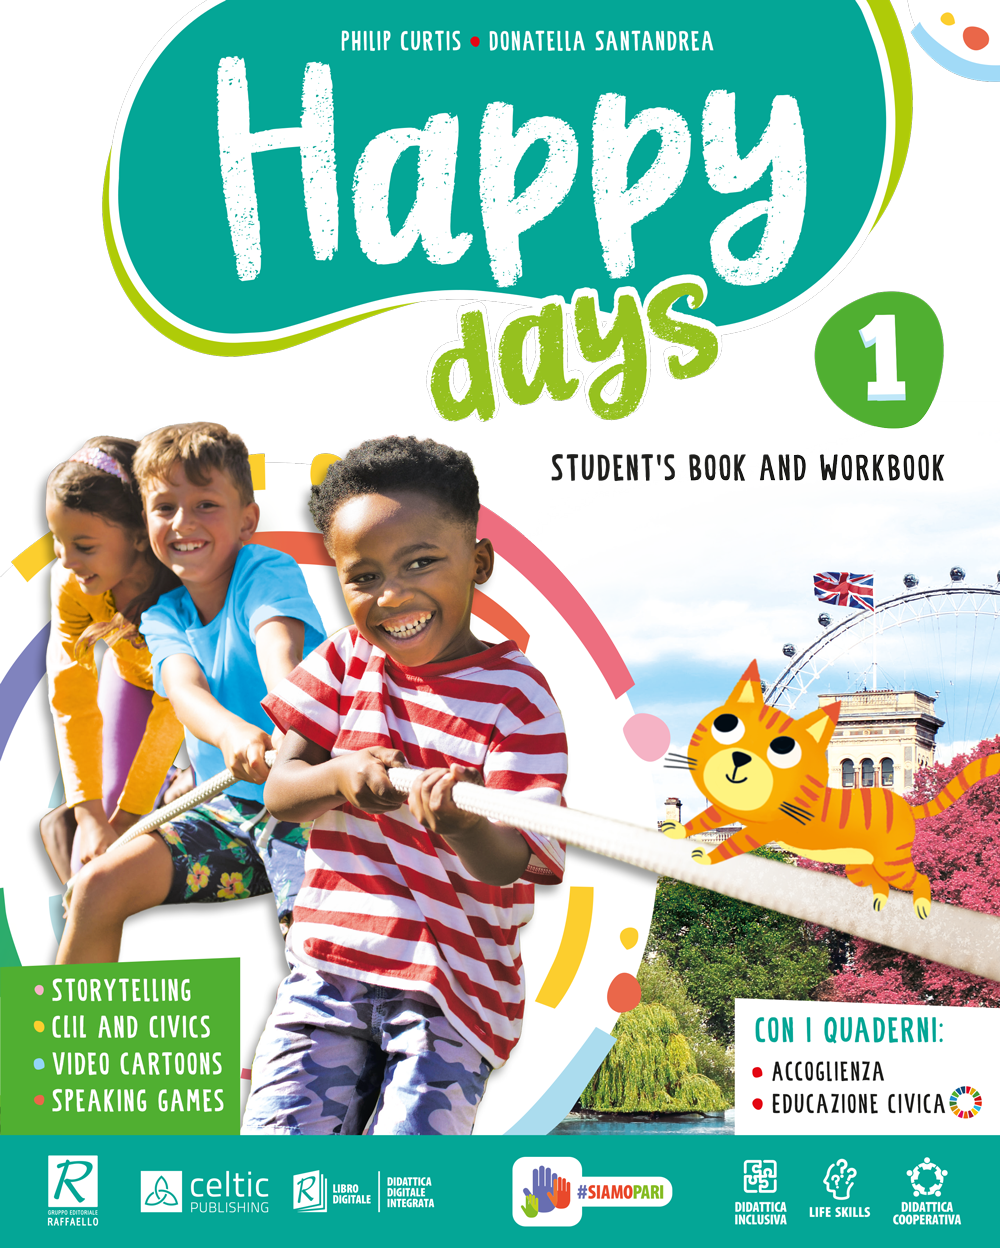 Happy Days - Celtic Publishing